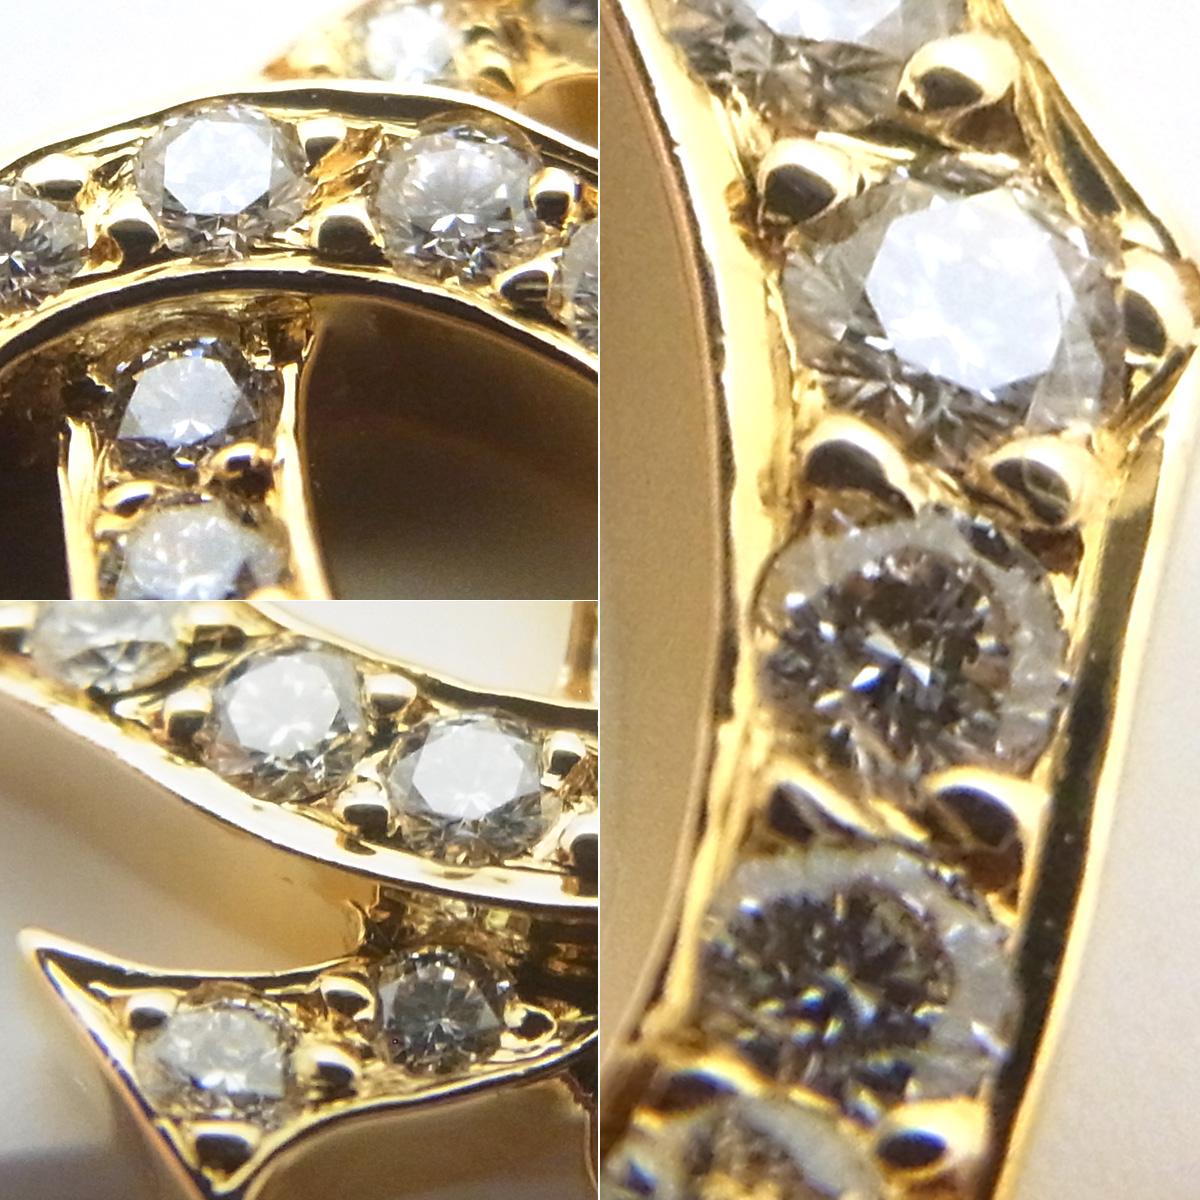 カルティエ(Cartier) 2Cチャーム 750YG ダイヤモンド SAランク ゴールドカラー